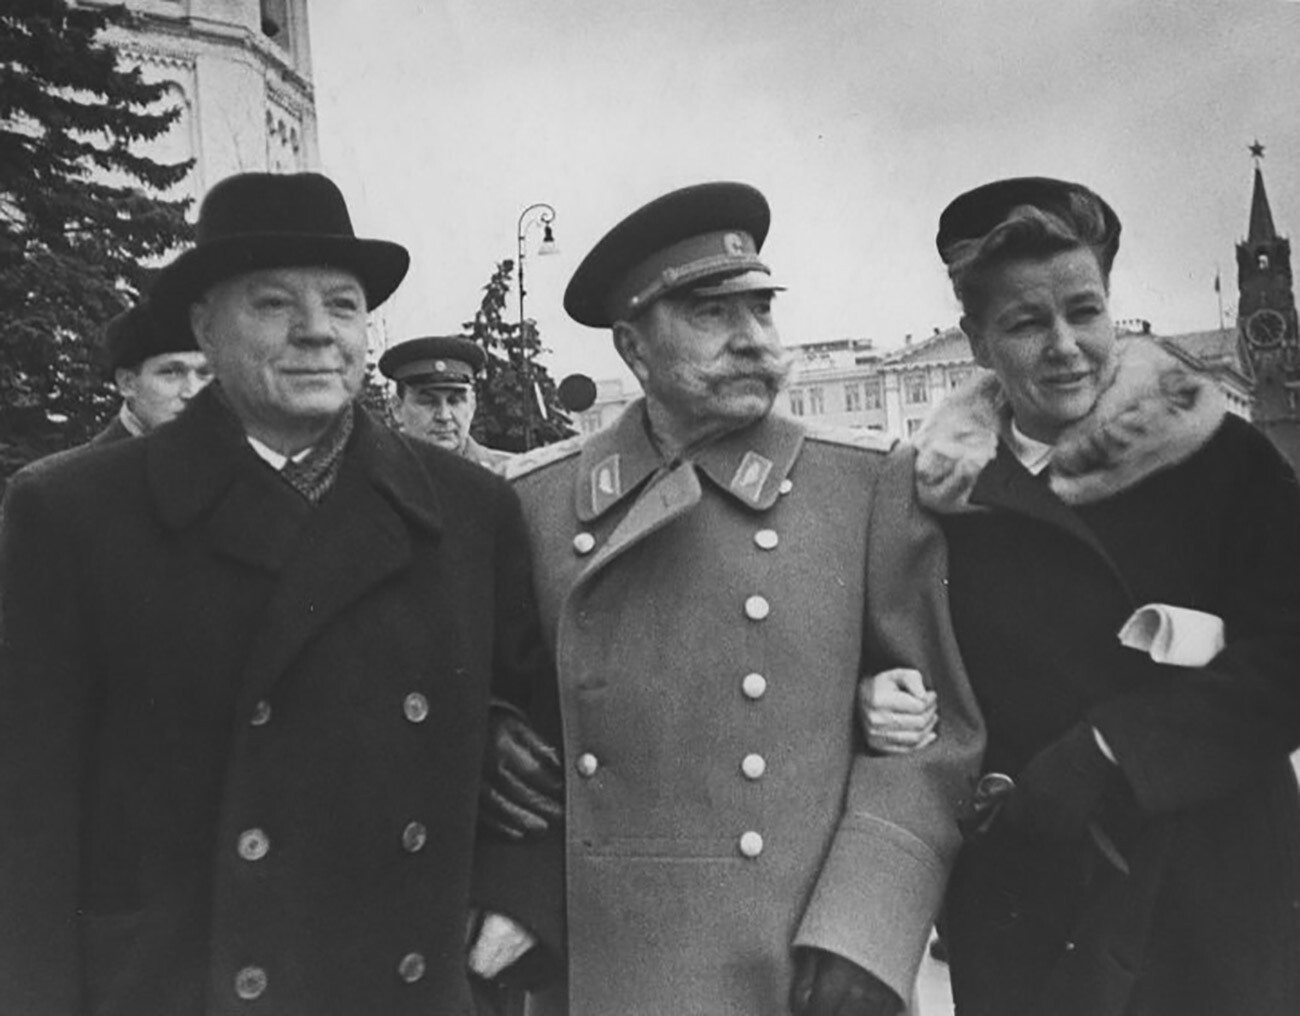 Kliment Voroshilov, Semyon Budyonny and Yekaterina Furtseva at the Moscow Kremlin